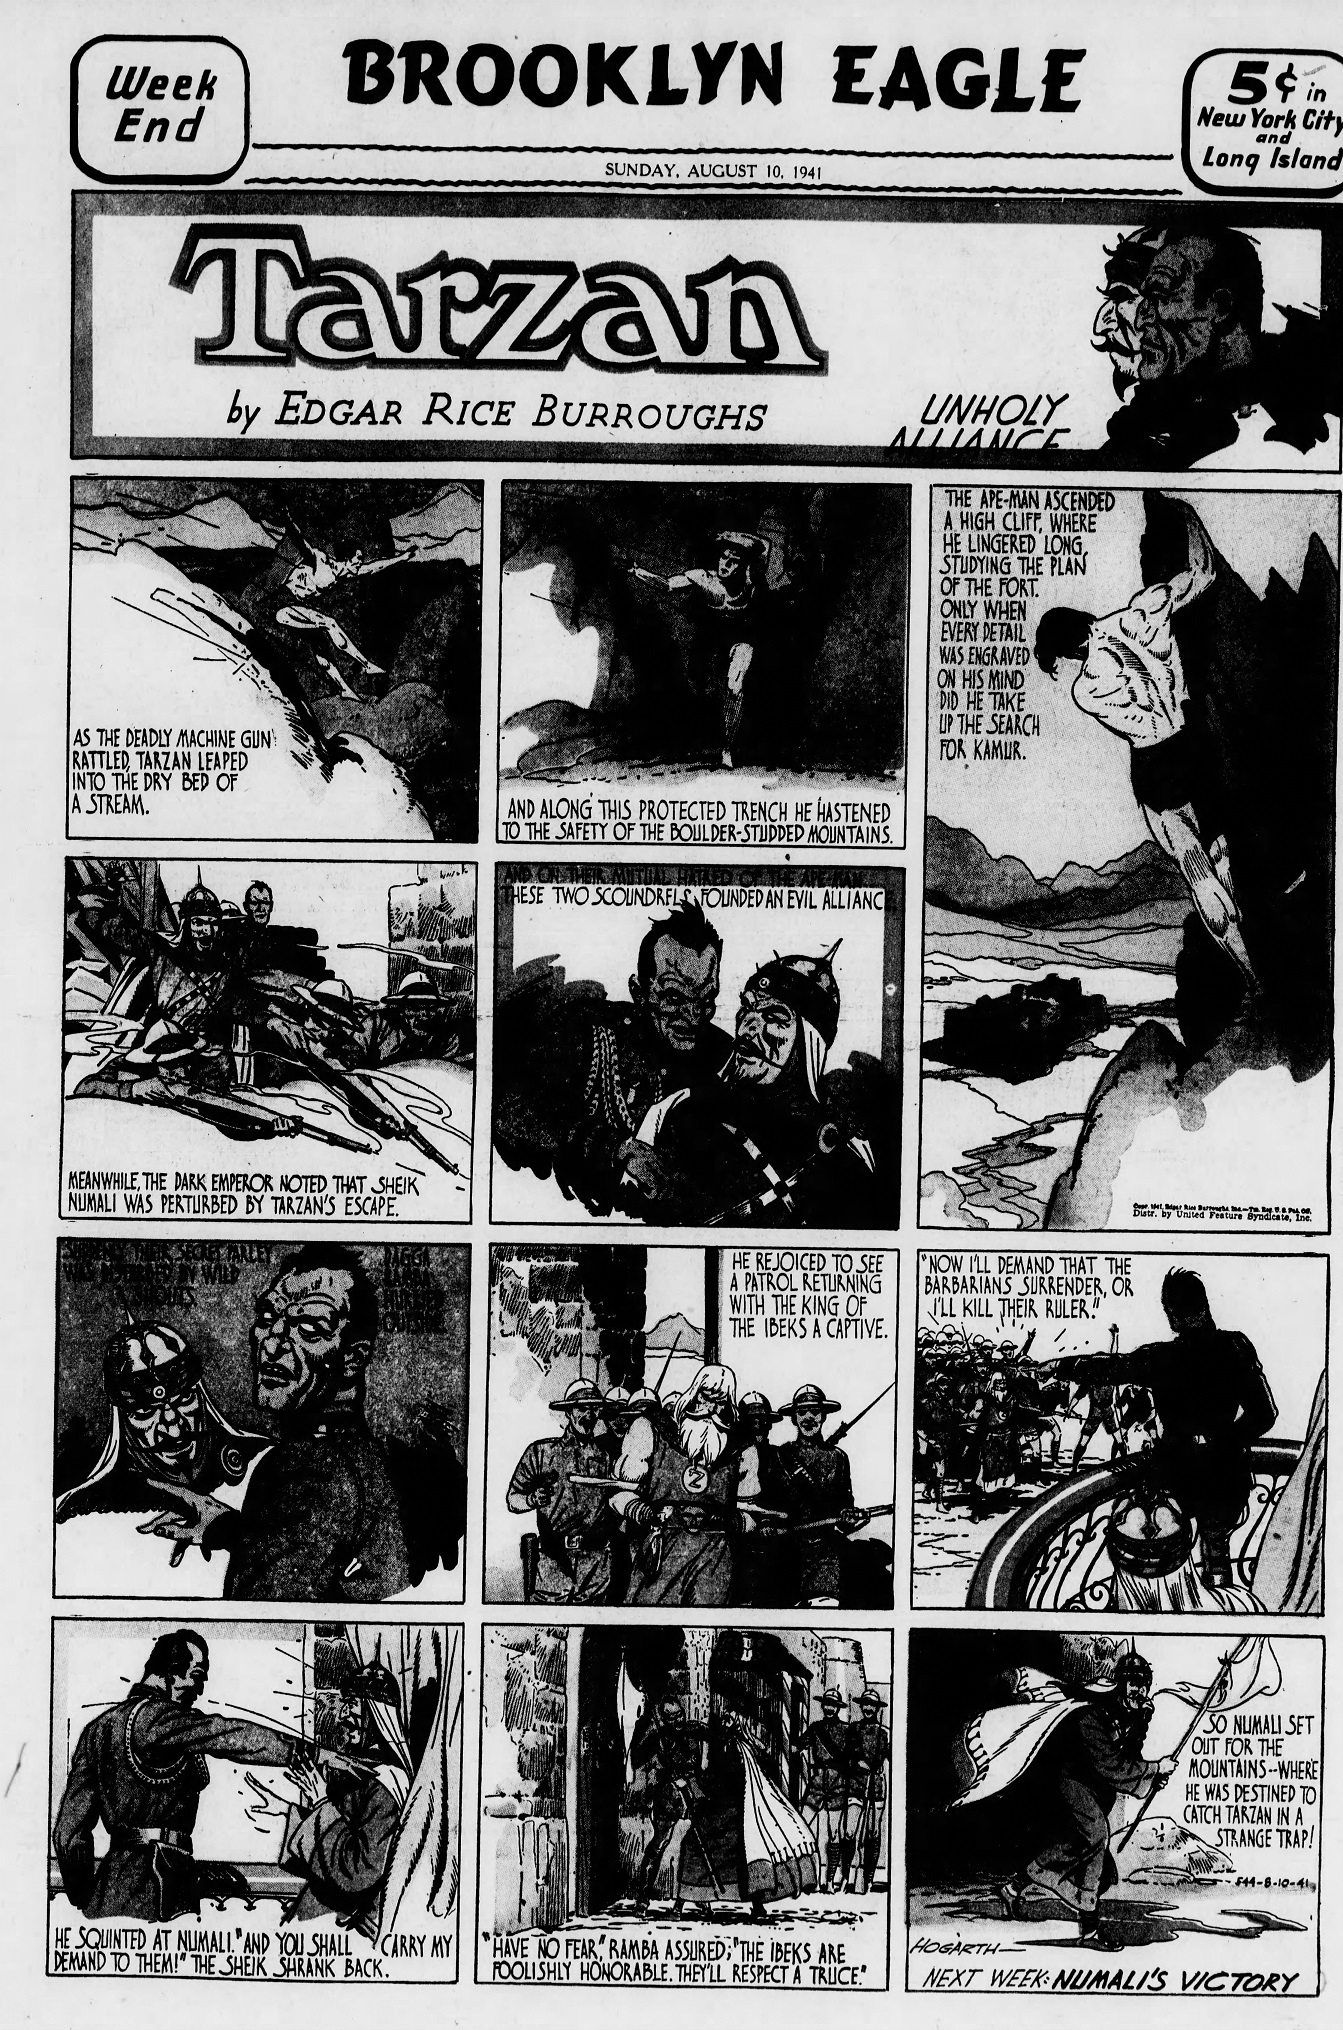 The_Brooklyn_Daily_Eagle_Sun__Aug_10__1941_(4).jpg